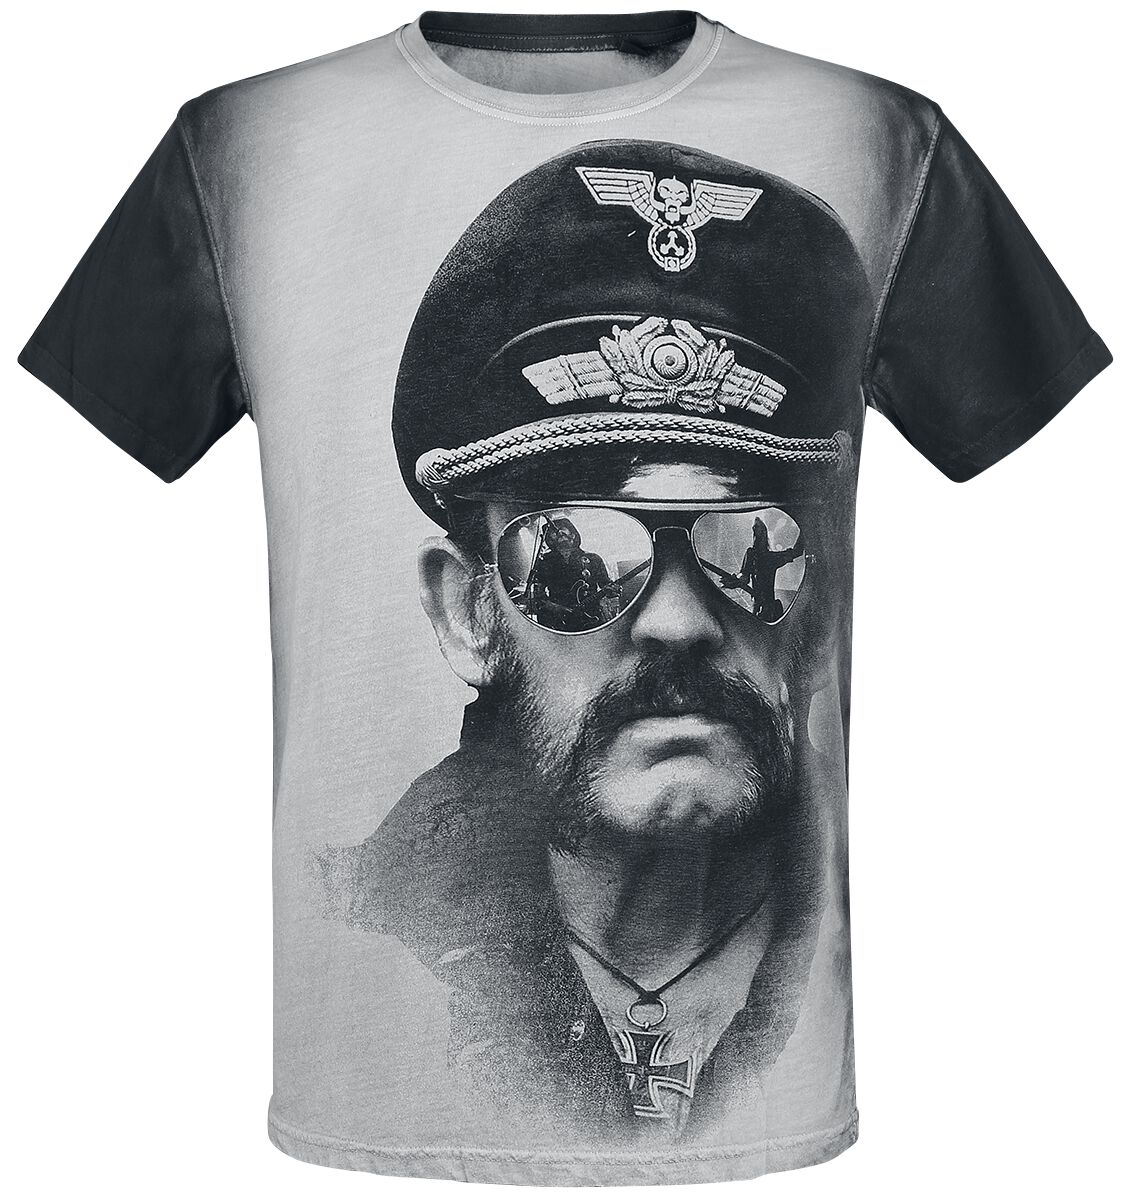 Lemmy T-Shirt - Kilmister Side - S bis XXL - für Männer - Größe S - altweiß/grau  - Lizenziertes Merchandise!